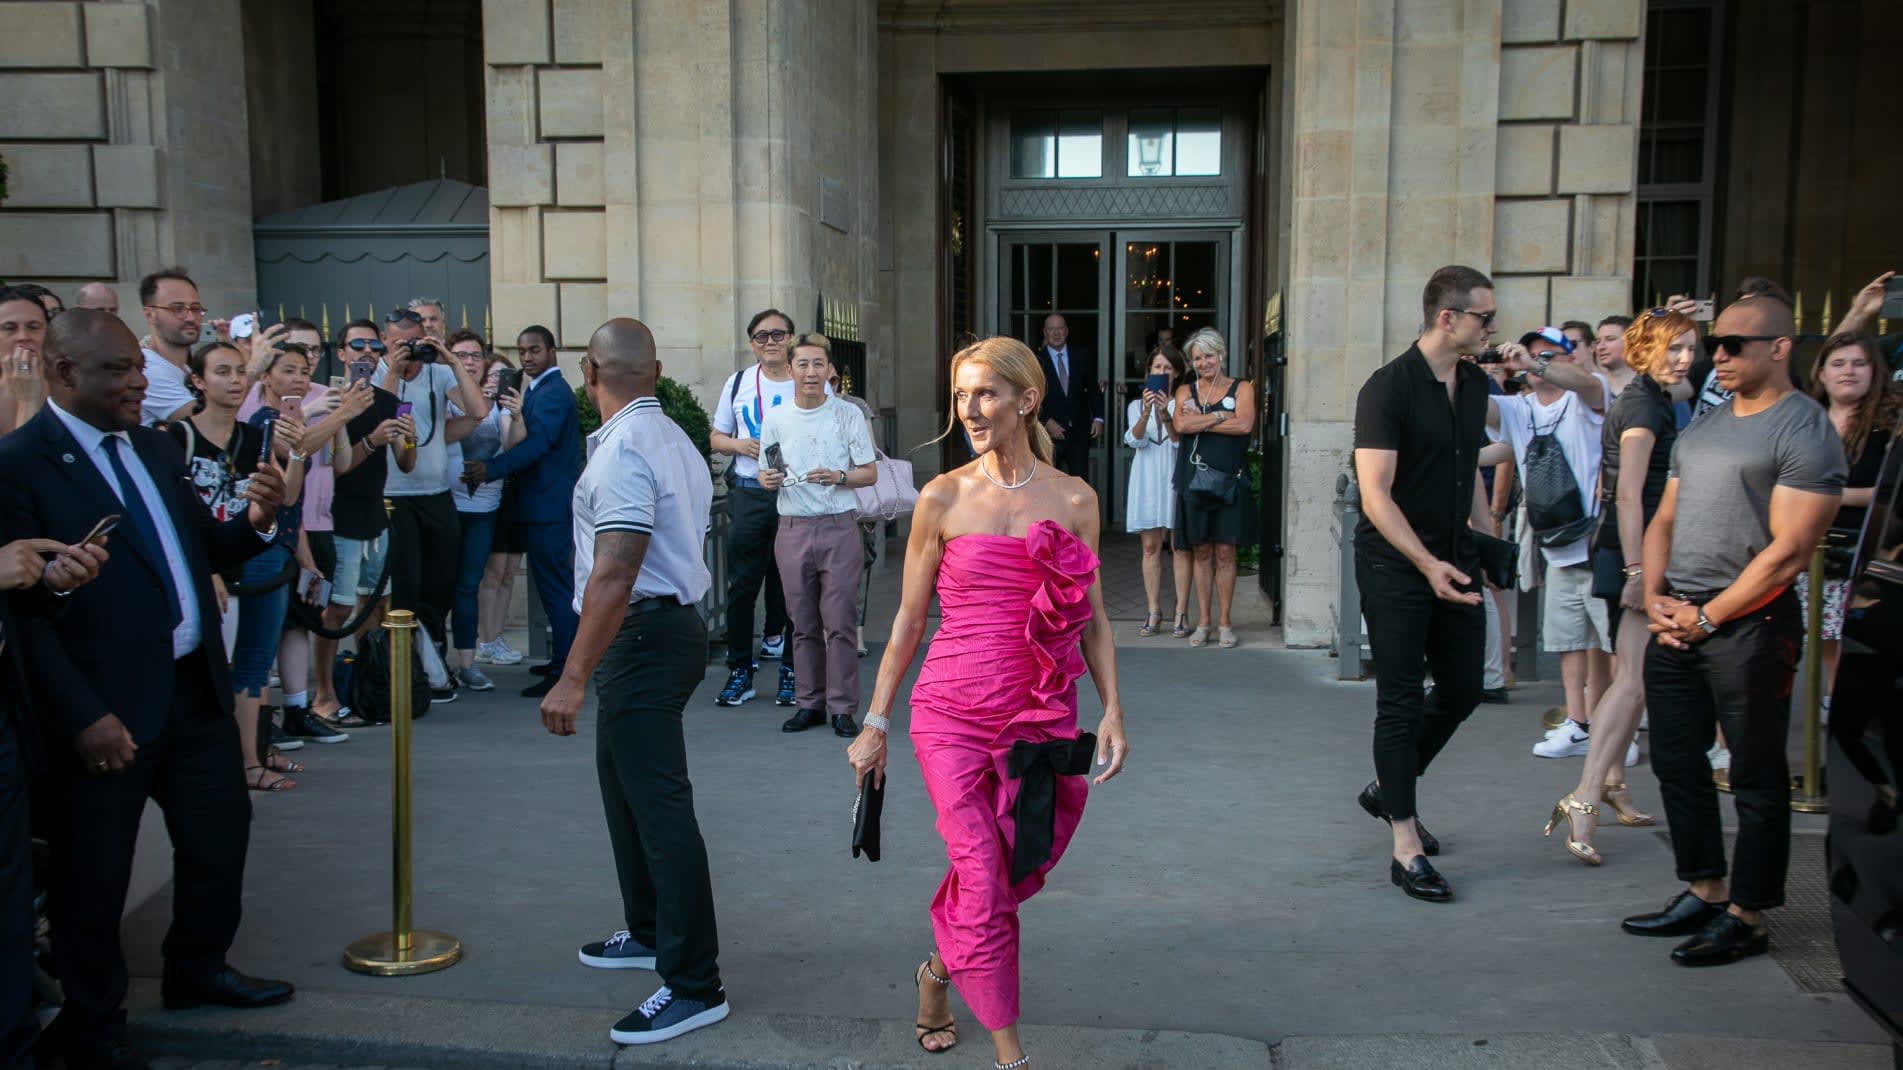 سيلين ديون تثير الجدل بإطلالتها "الجريئة" خلال أسبوع الموضة بباريس